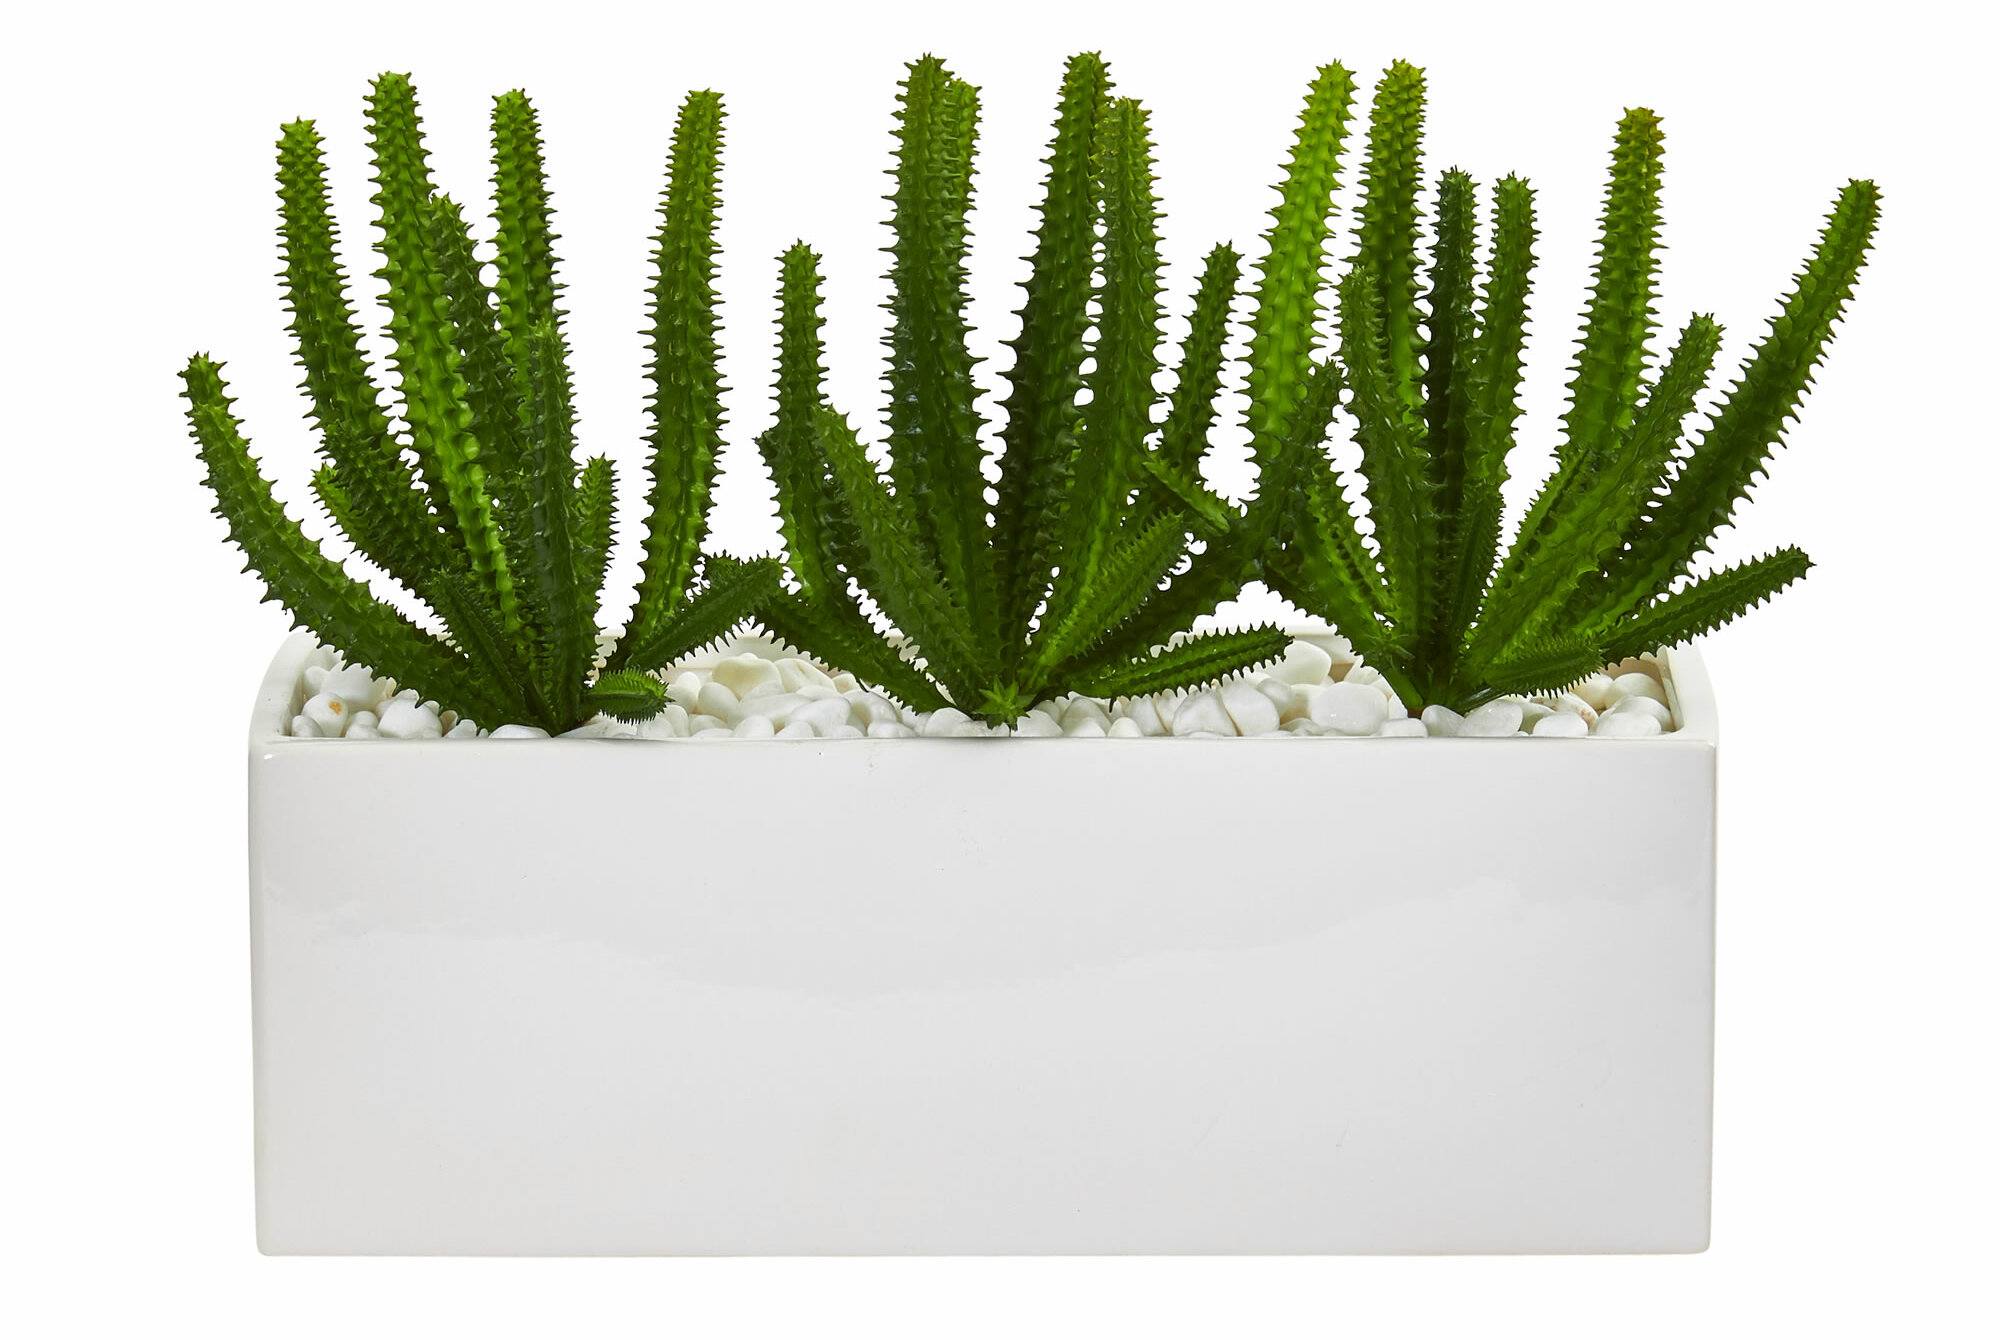 3 Cactus Desert Succulent Plants Lifelike Artificial Grass Landscape